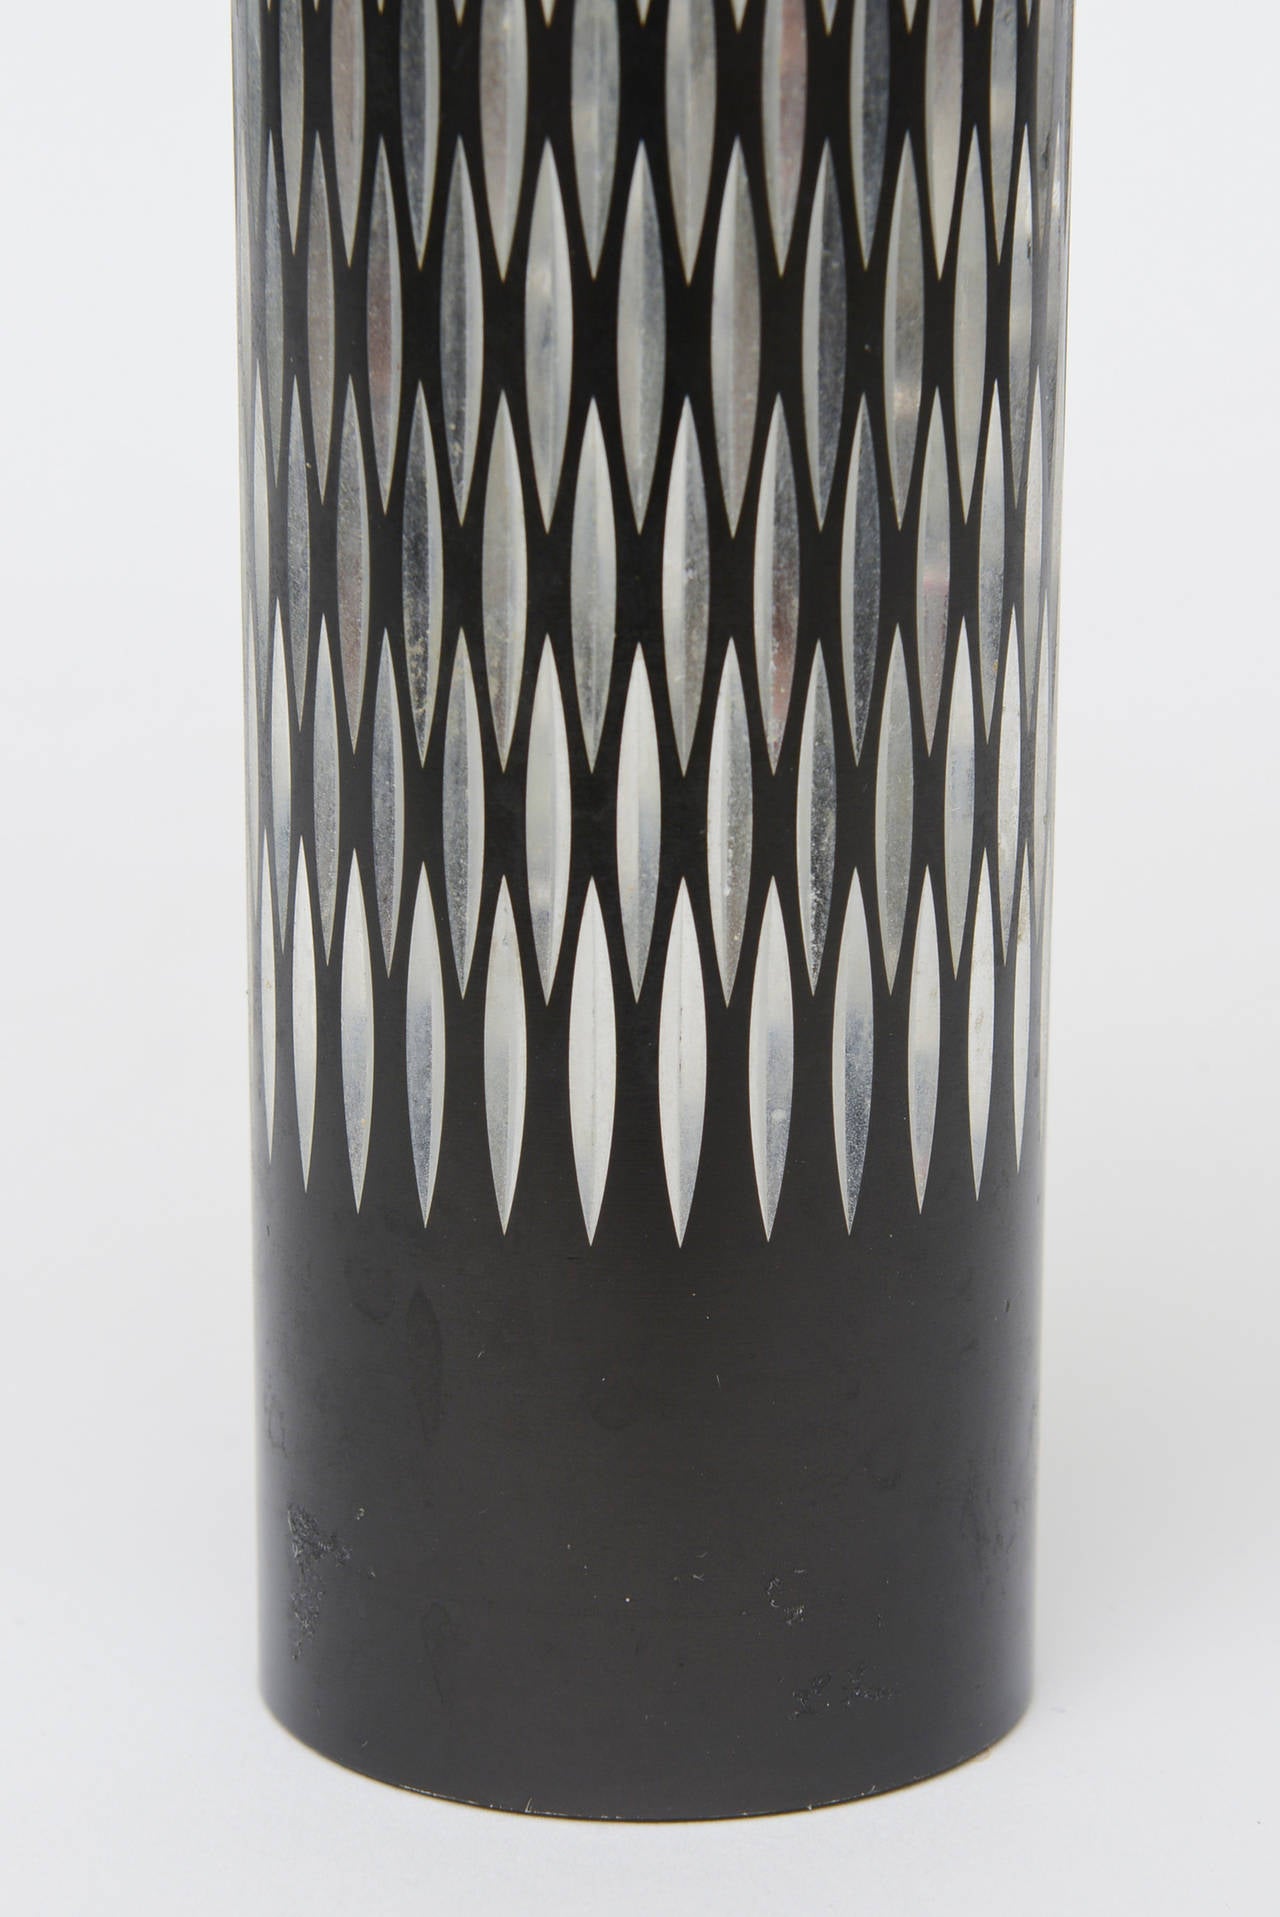 Vintage English Metal Diamond Patterned Vase or Pen Holder Desk Accessory  For Sale 2